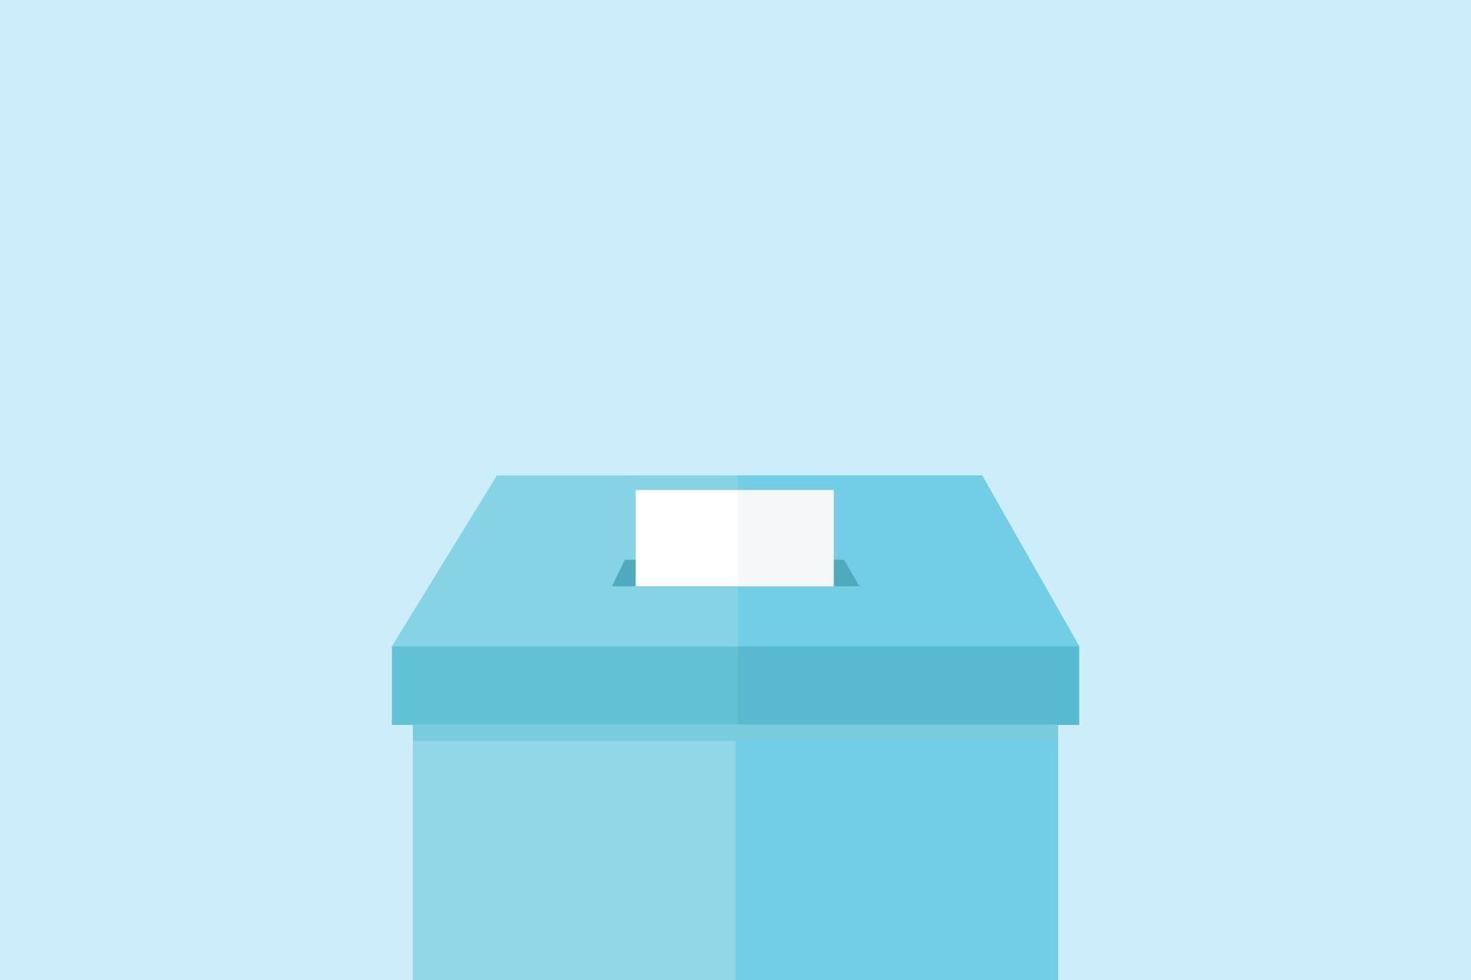 diseño plano de la urna sobre fondo azul. vector